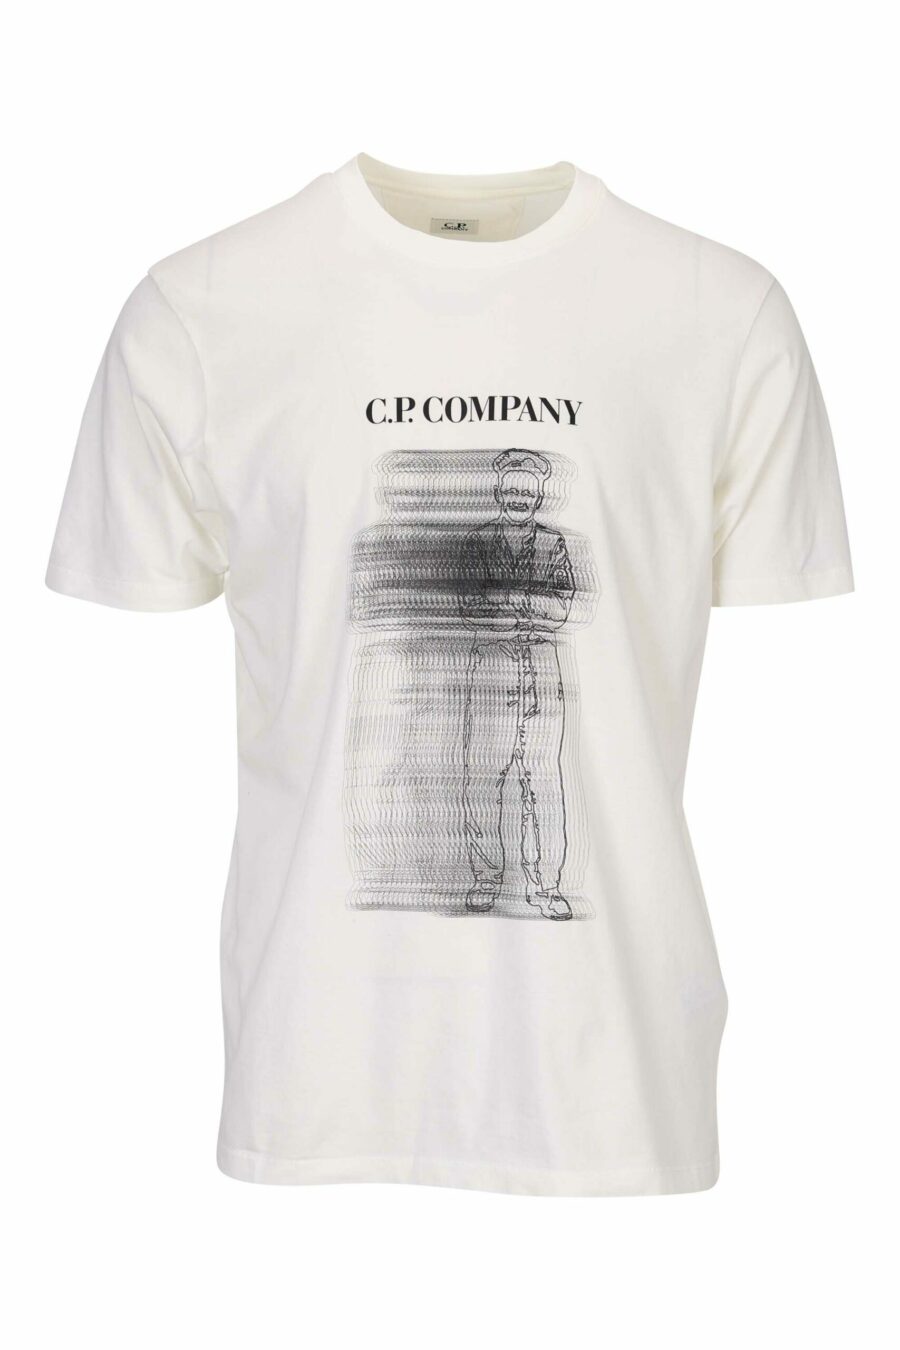 Weißes T-Shirt mit verschwommenem Seemann - 7620943601091 skaliert